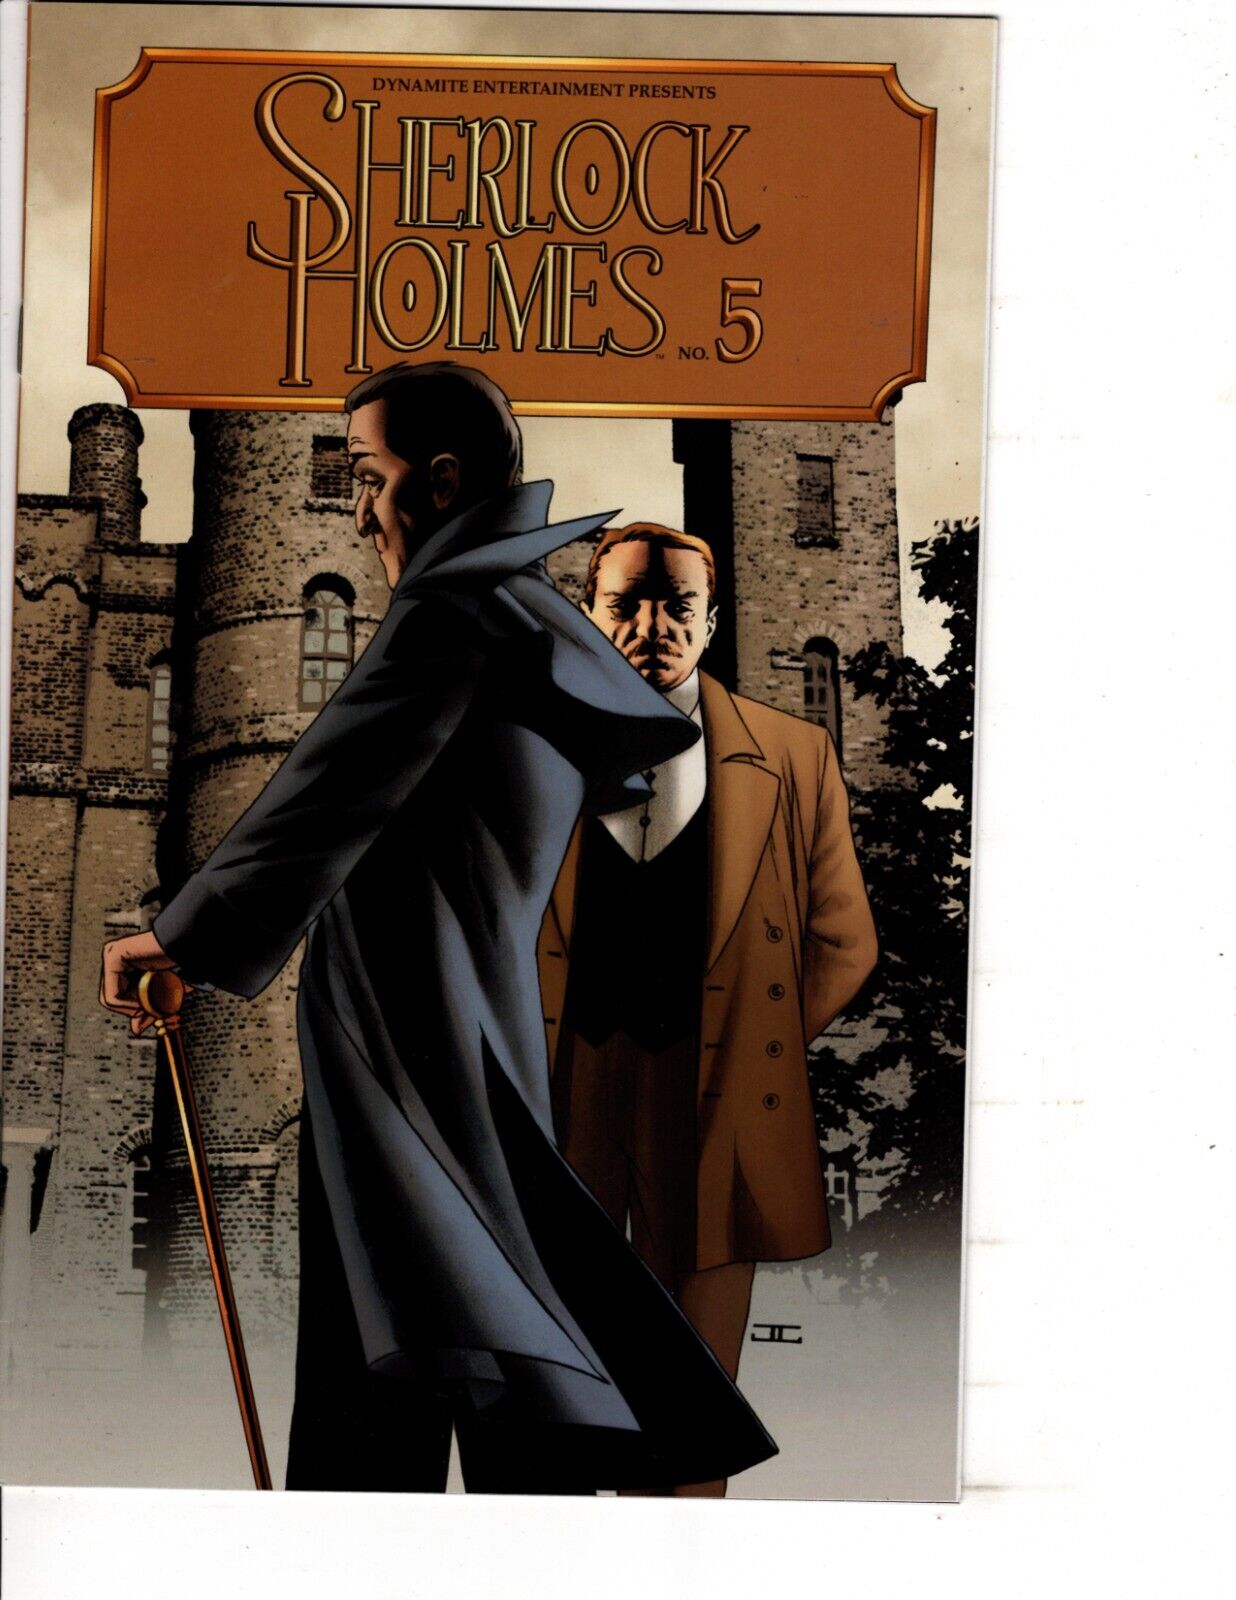 Sherlock Holmes #5 -Comic Book Dynamite Entertainment - 2009 NM-